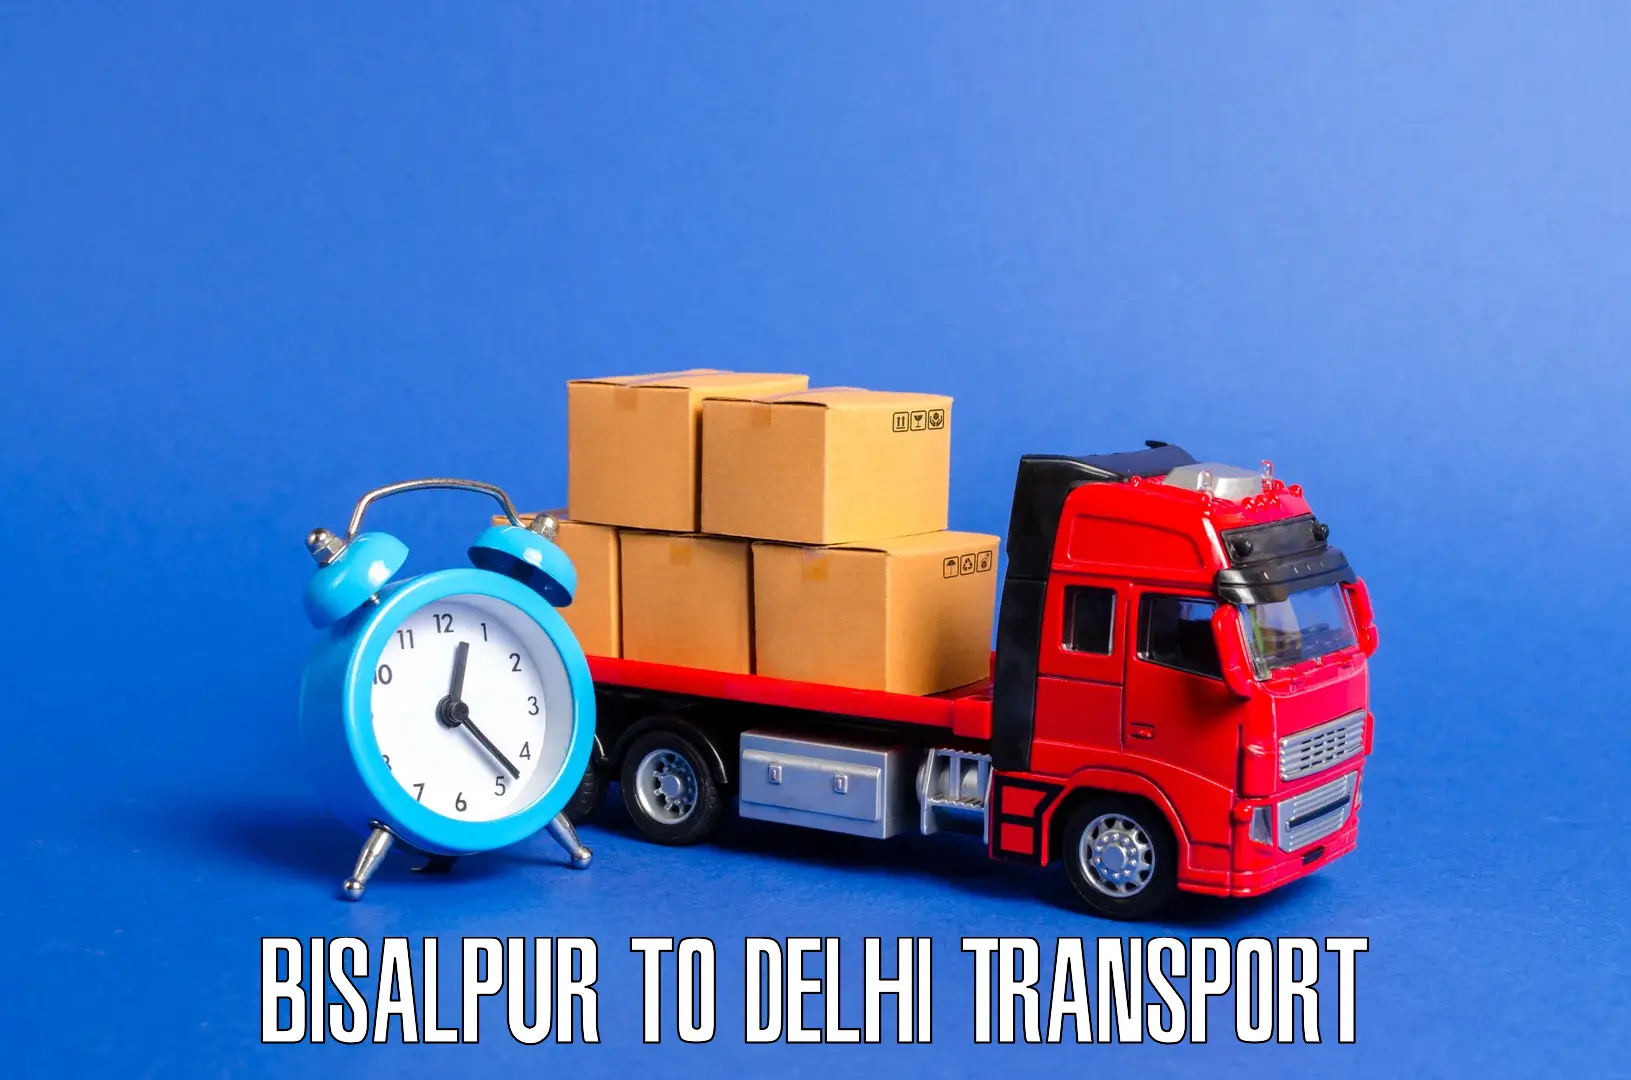 Furniture transport service Bisalpur to East Delhi